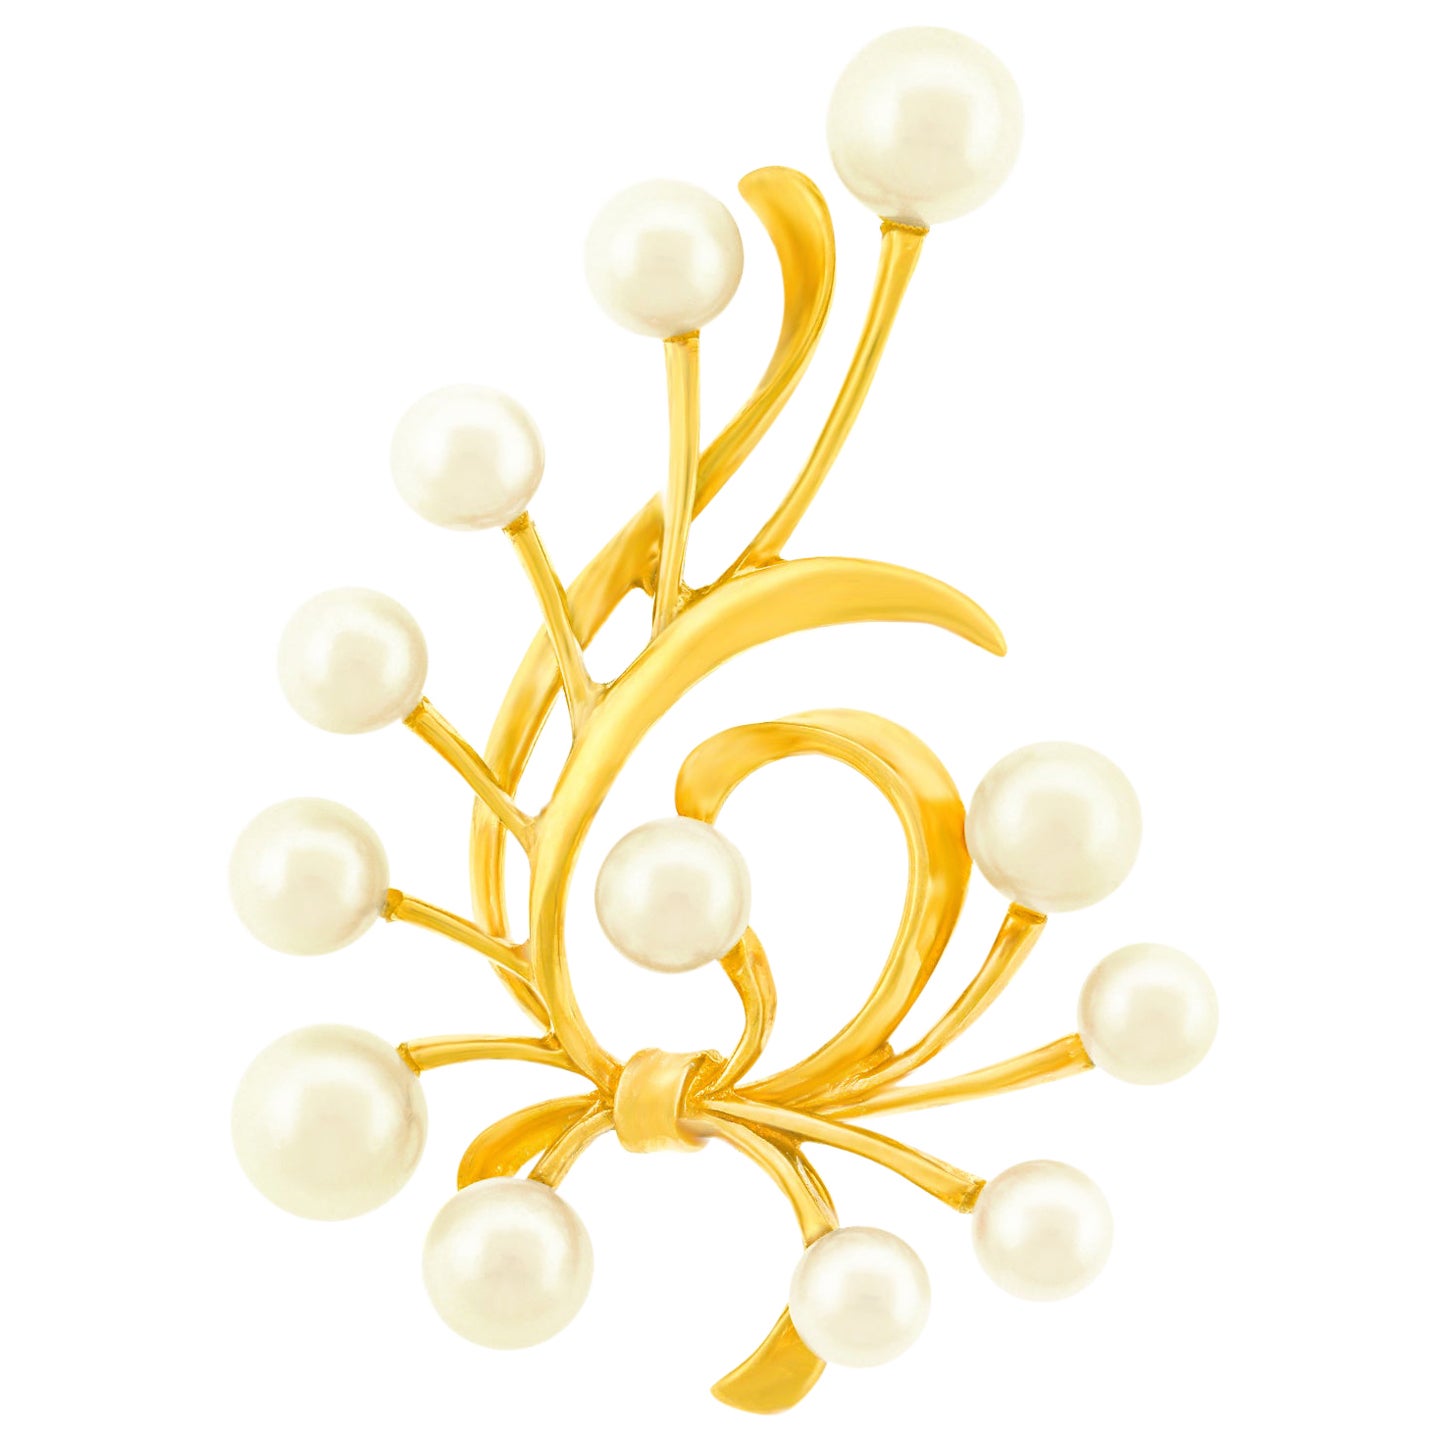 Mikimoto Sechziger Jahre Mod Goldbrosche mit Perlenbesatz